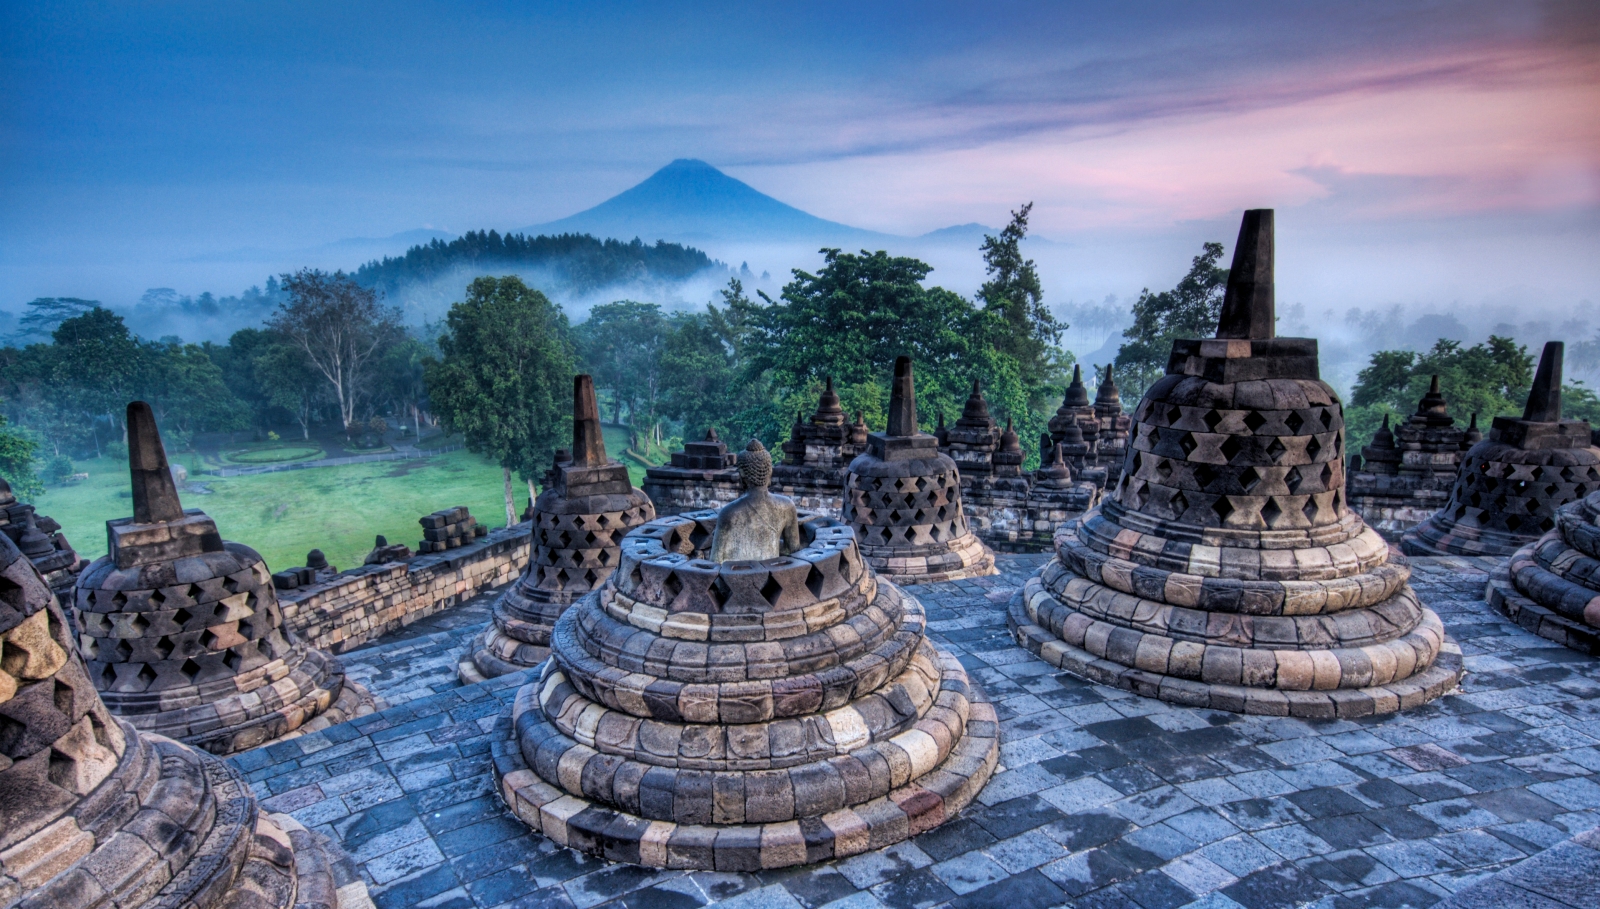 Borobudur Picture